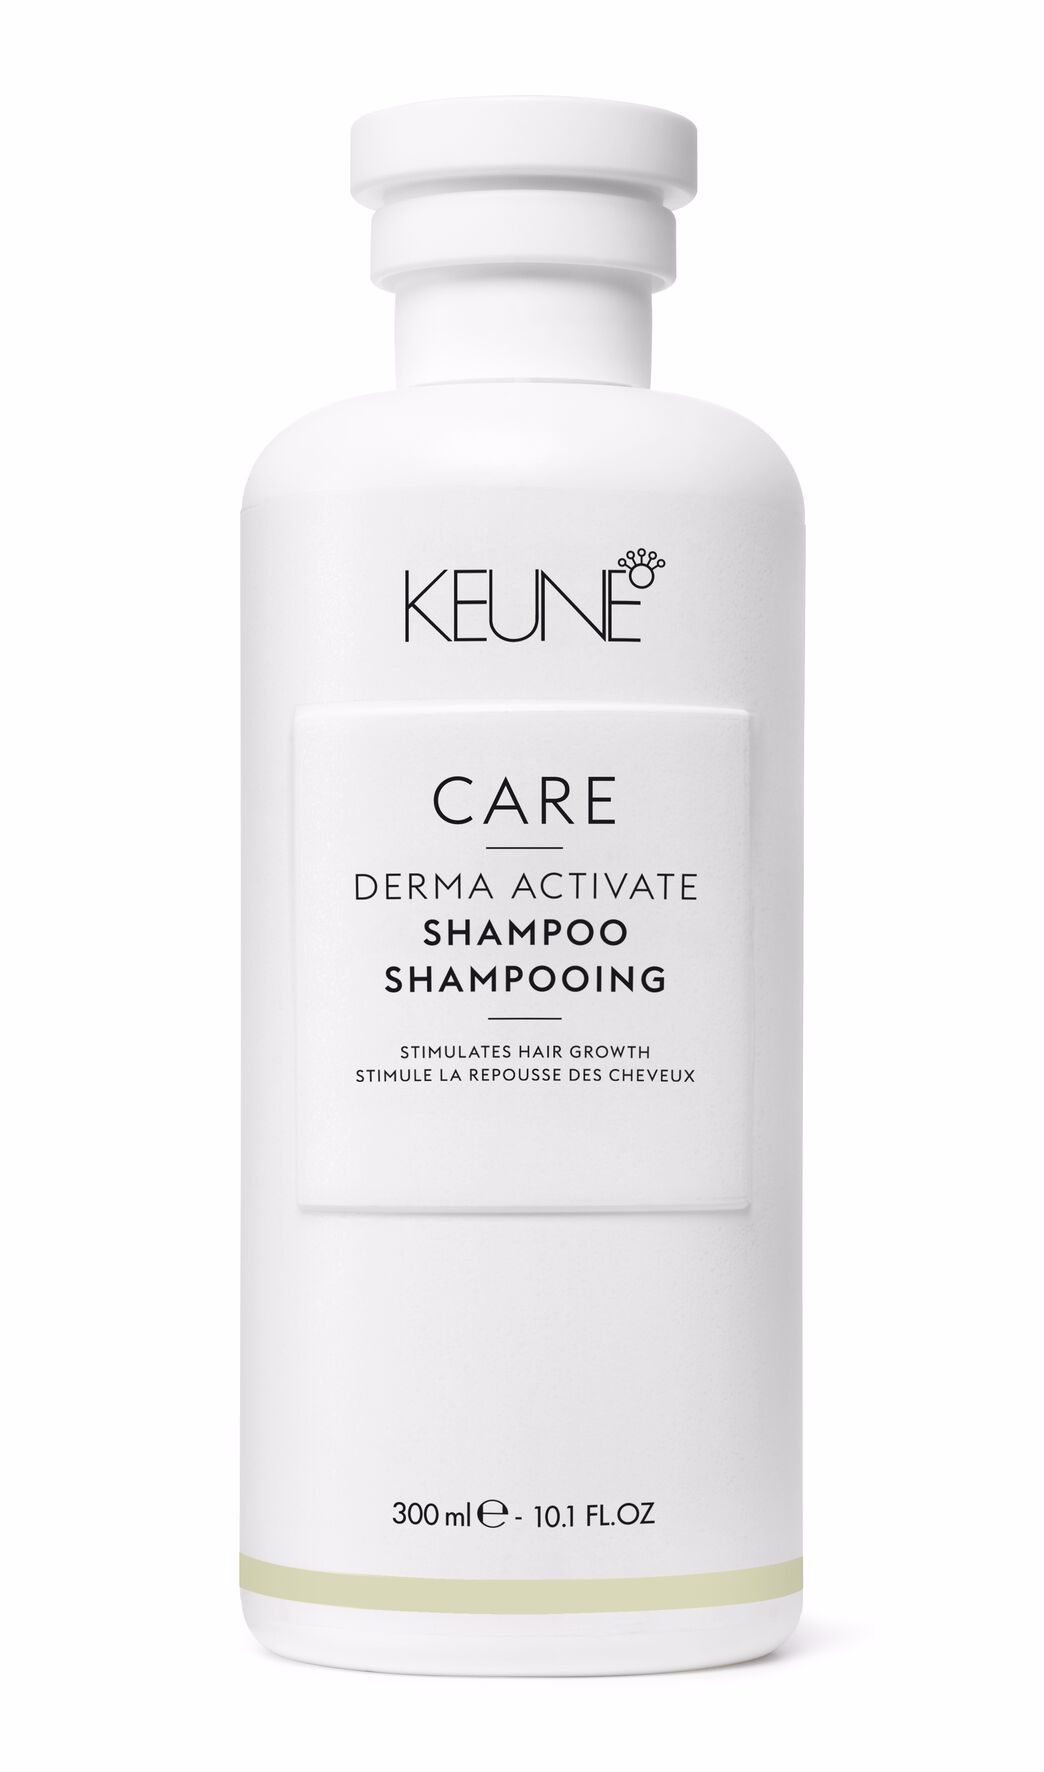 Haarausfall? Stärke dein Haar und besiege Haarausfall mit Derma Activate Shampoo ohne Silikone. Es verbessert die Haarstruktur und unterstützt das Haarwachstum.